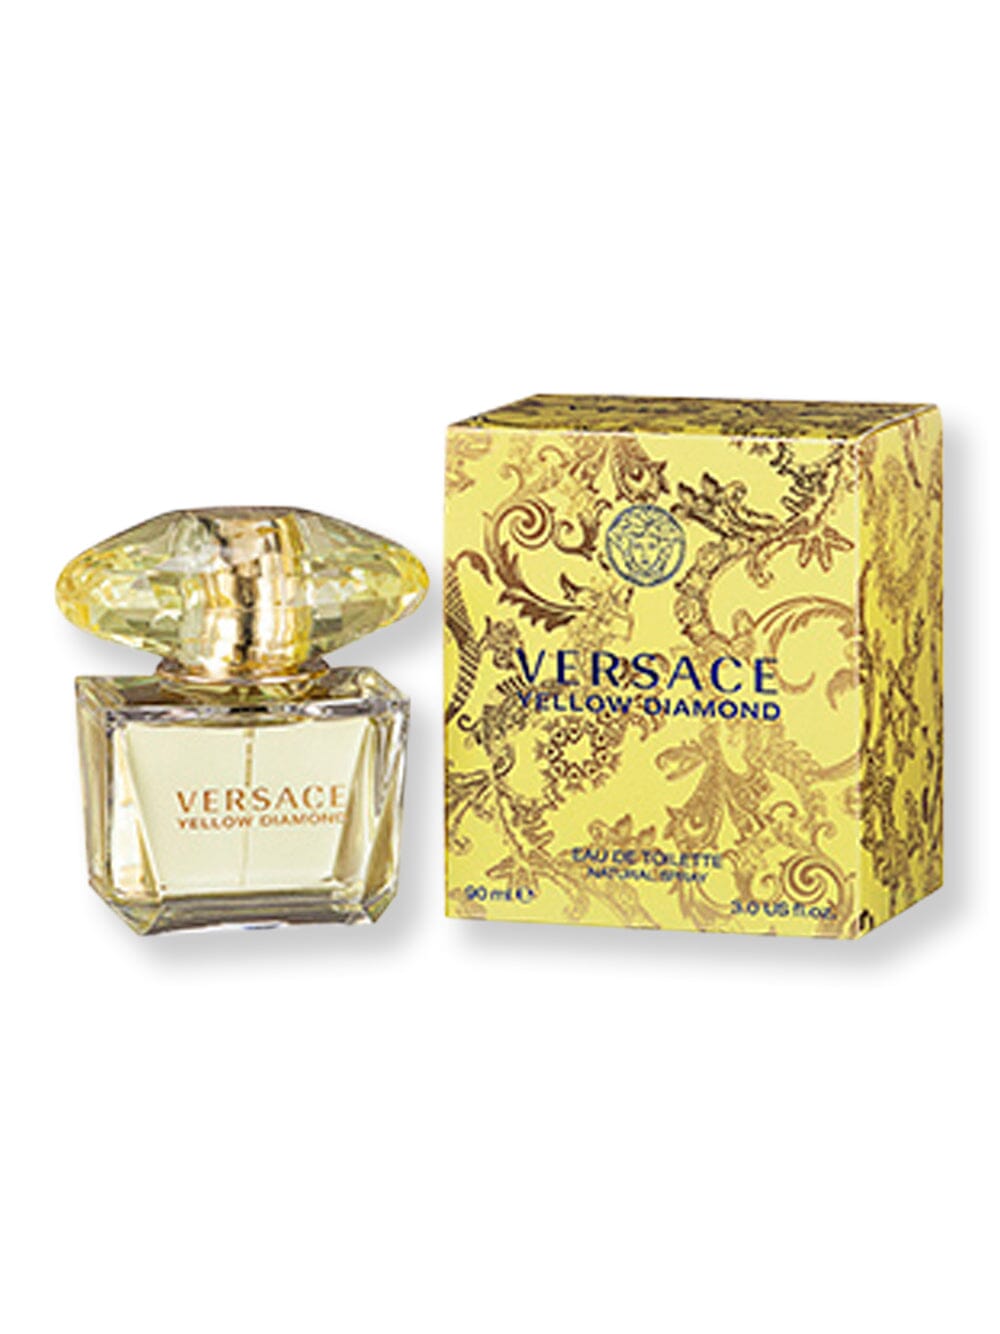 Versace Versace Yellow Diamond EDT Spray 3 oz Perfume 